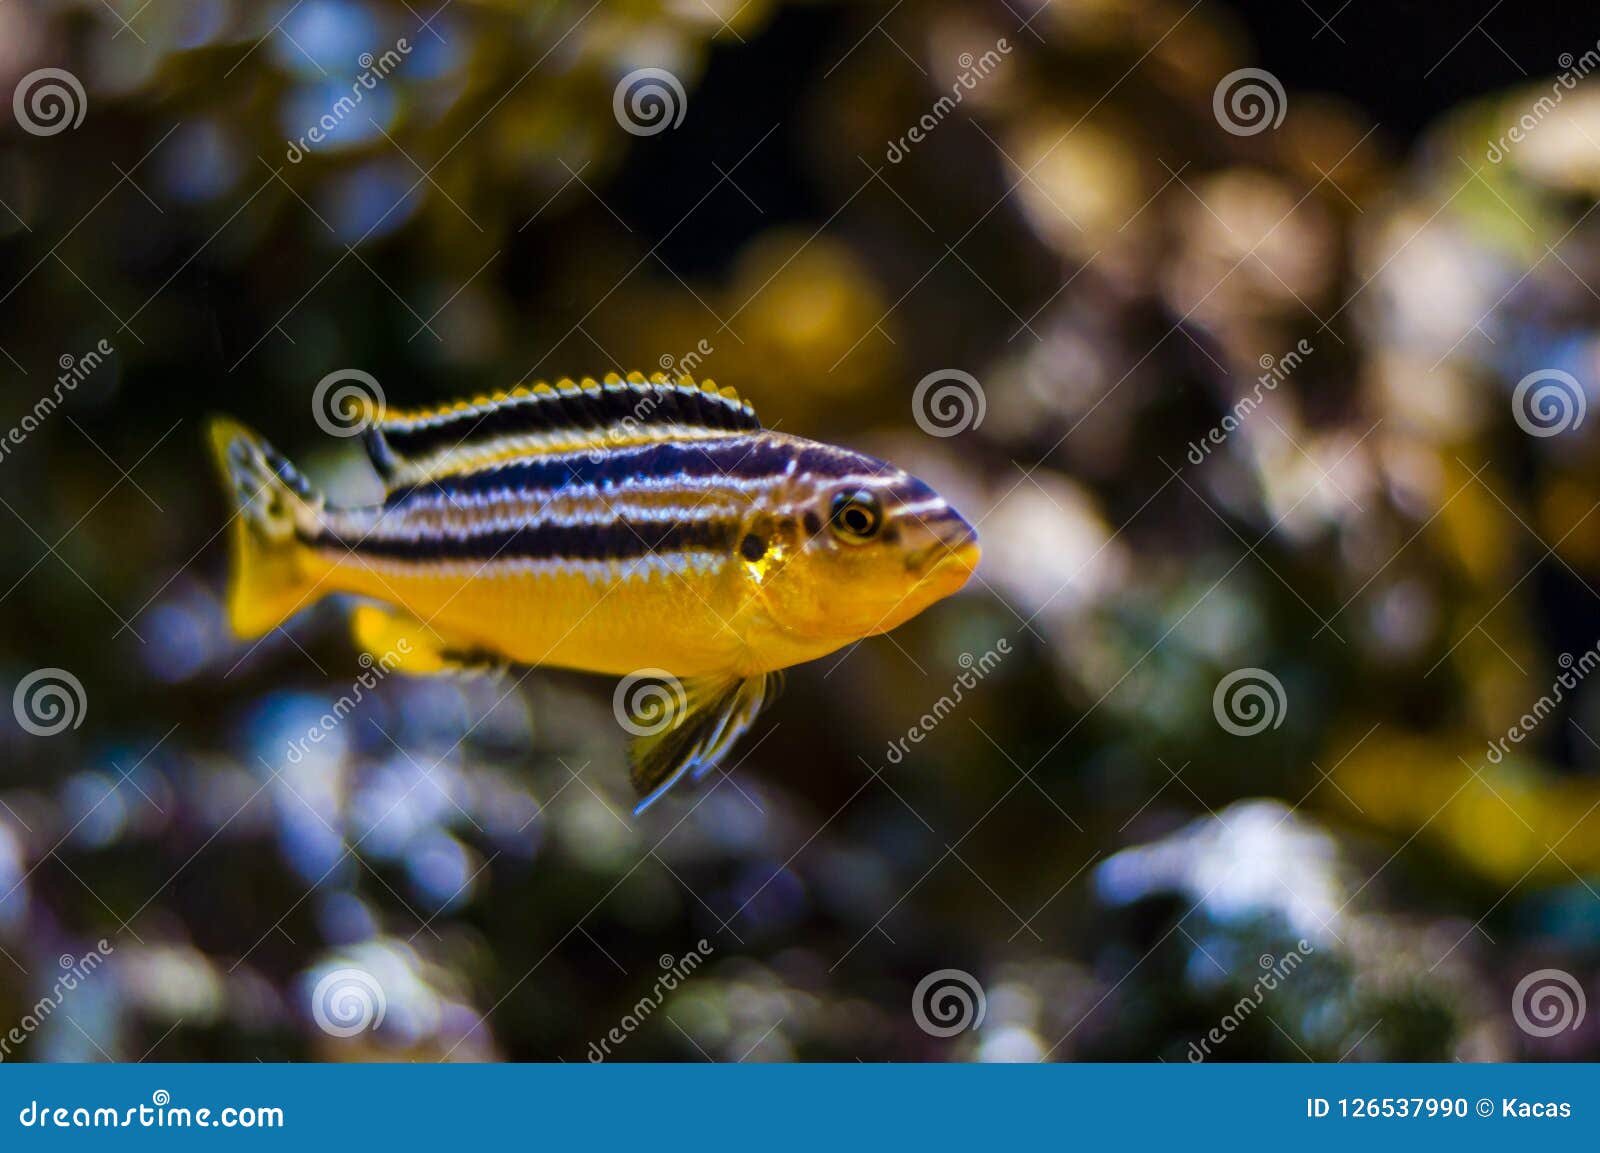 aquarium cichlids types